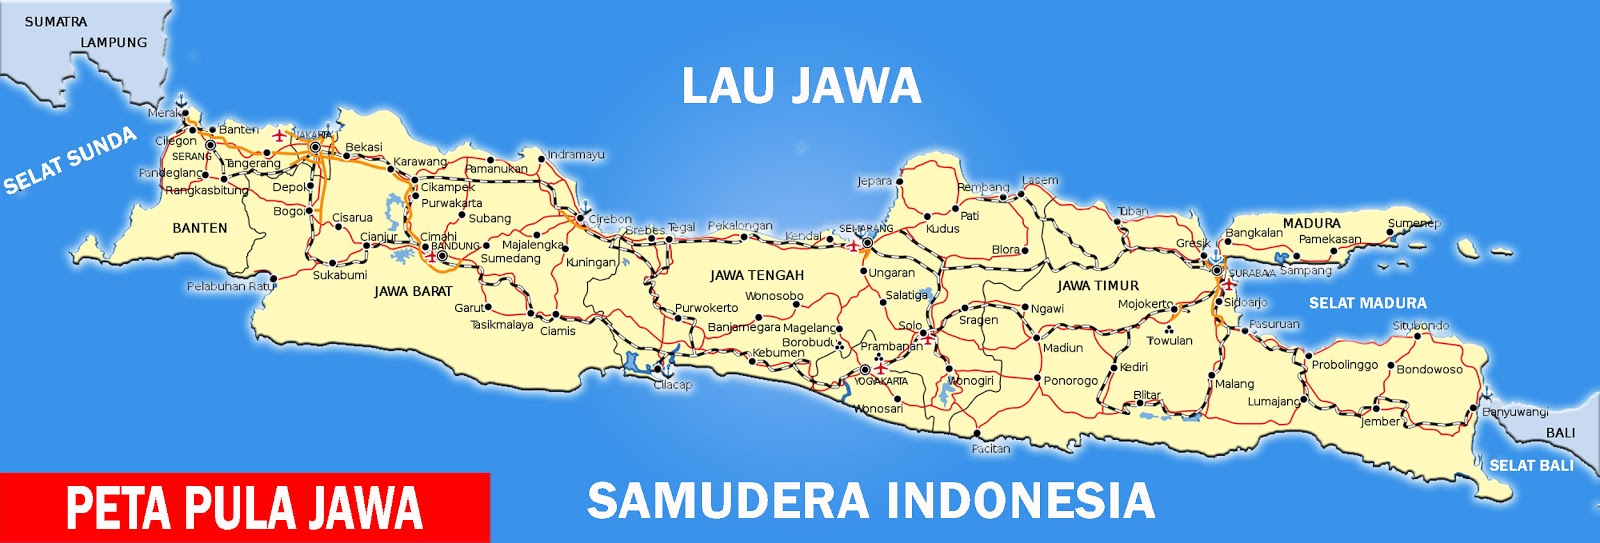 Peta Pulau Jawa Andhika S Blog